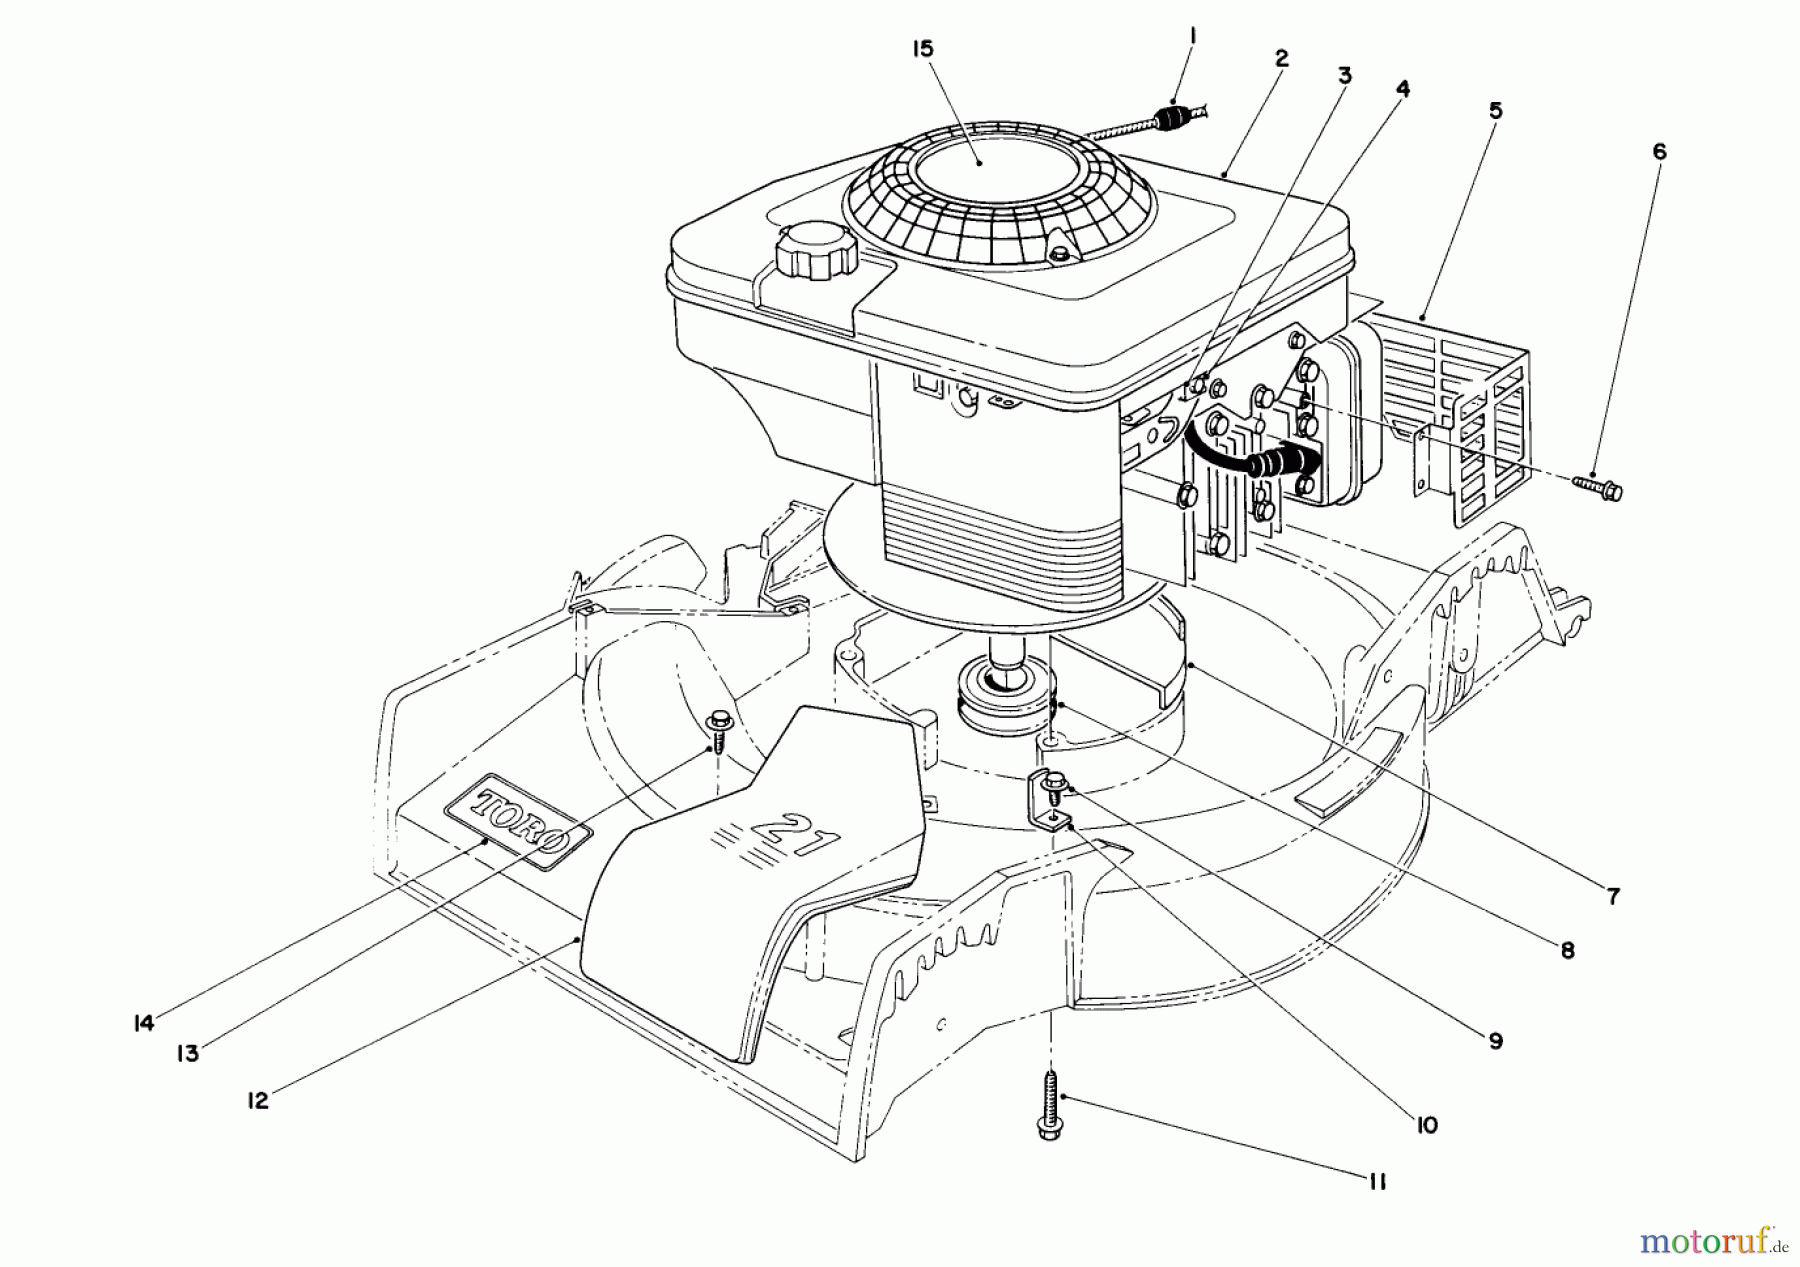  Toro Neu Mowers, Walk-Behind Seite 1 16401 - Toro Side Discharge Mower, 1994 (4900001-4999999) ENGINE ASSEMBLY